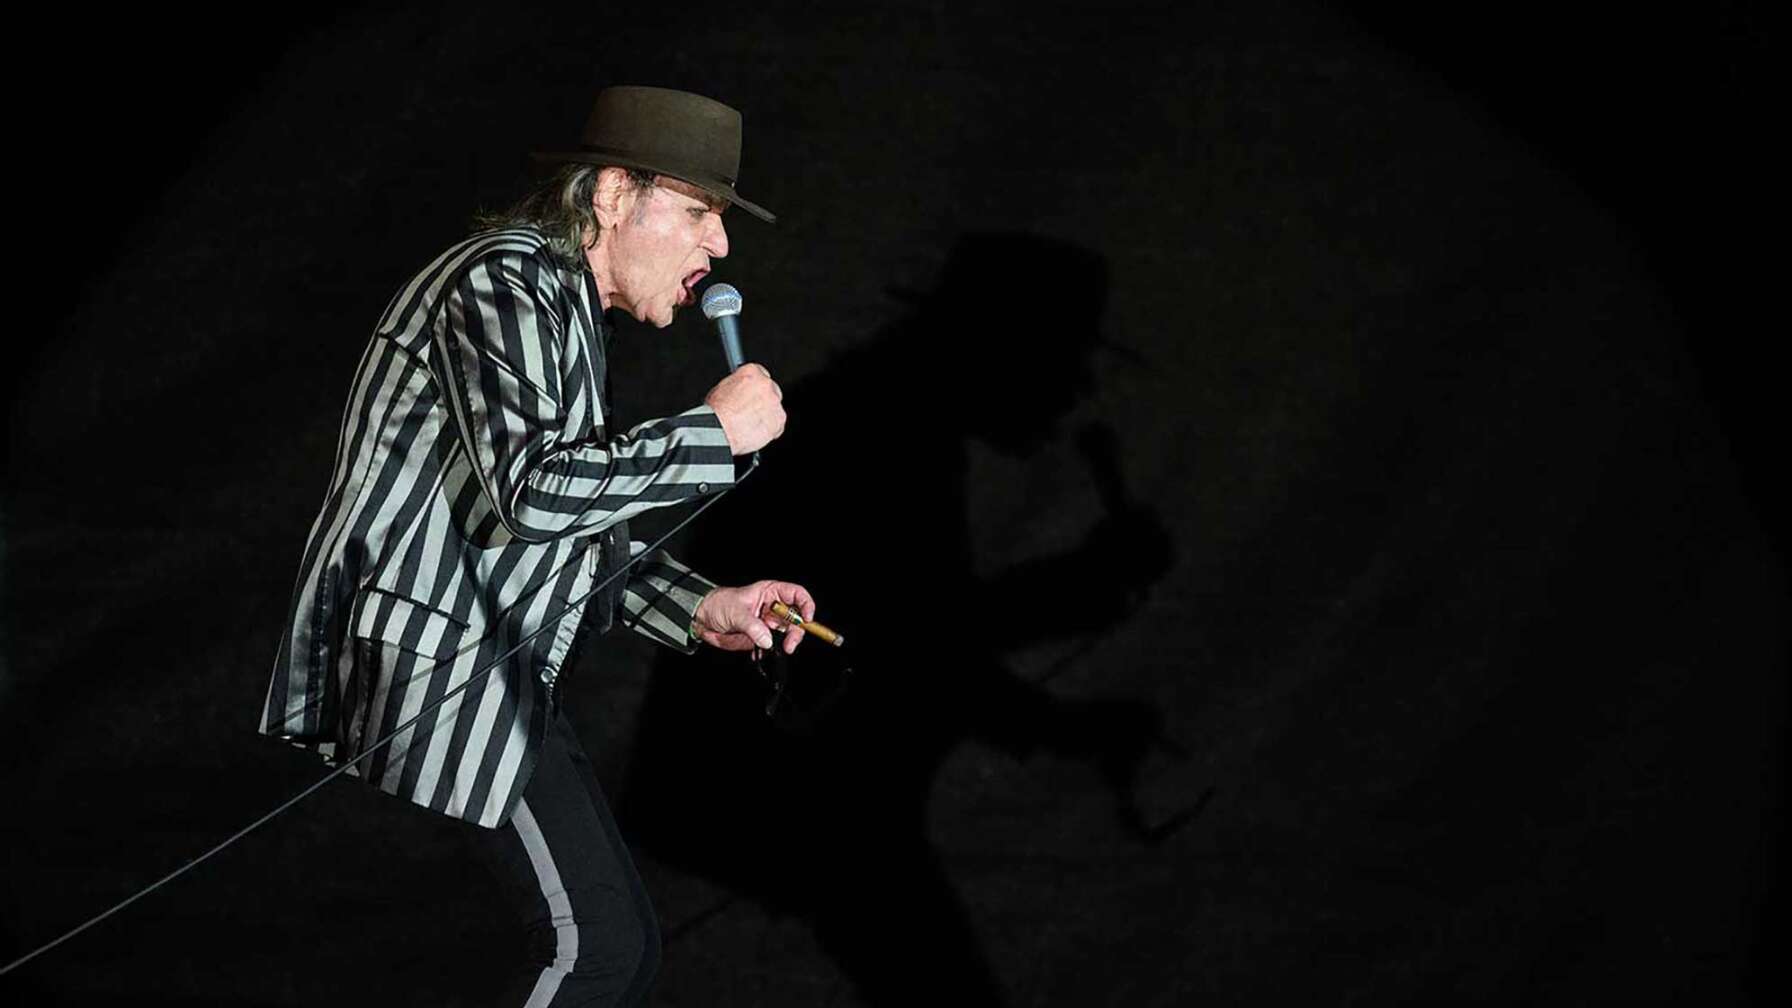 Sänger Udo Lindenberg performt mit Mikrofon in der Hand und Hut auf dem Kopf auf der Bühne.